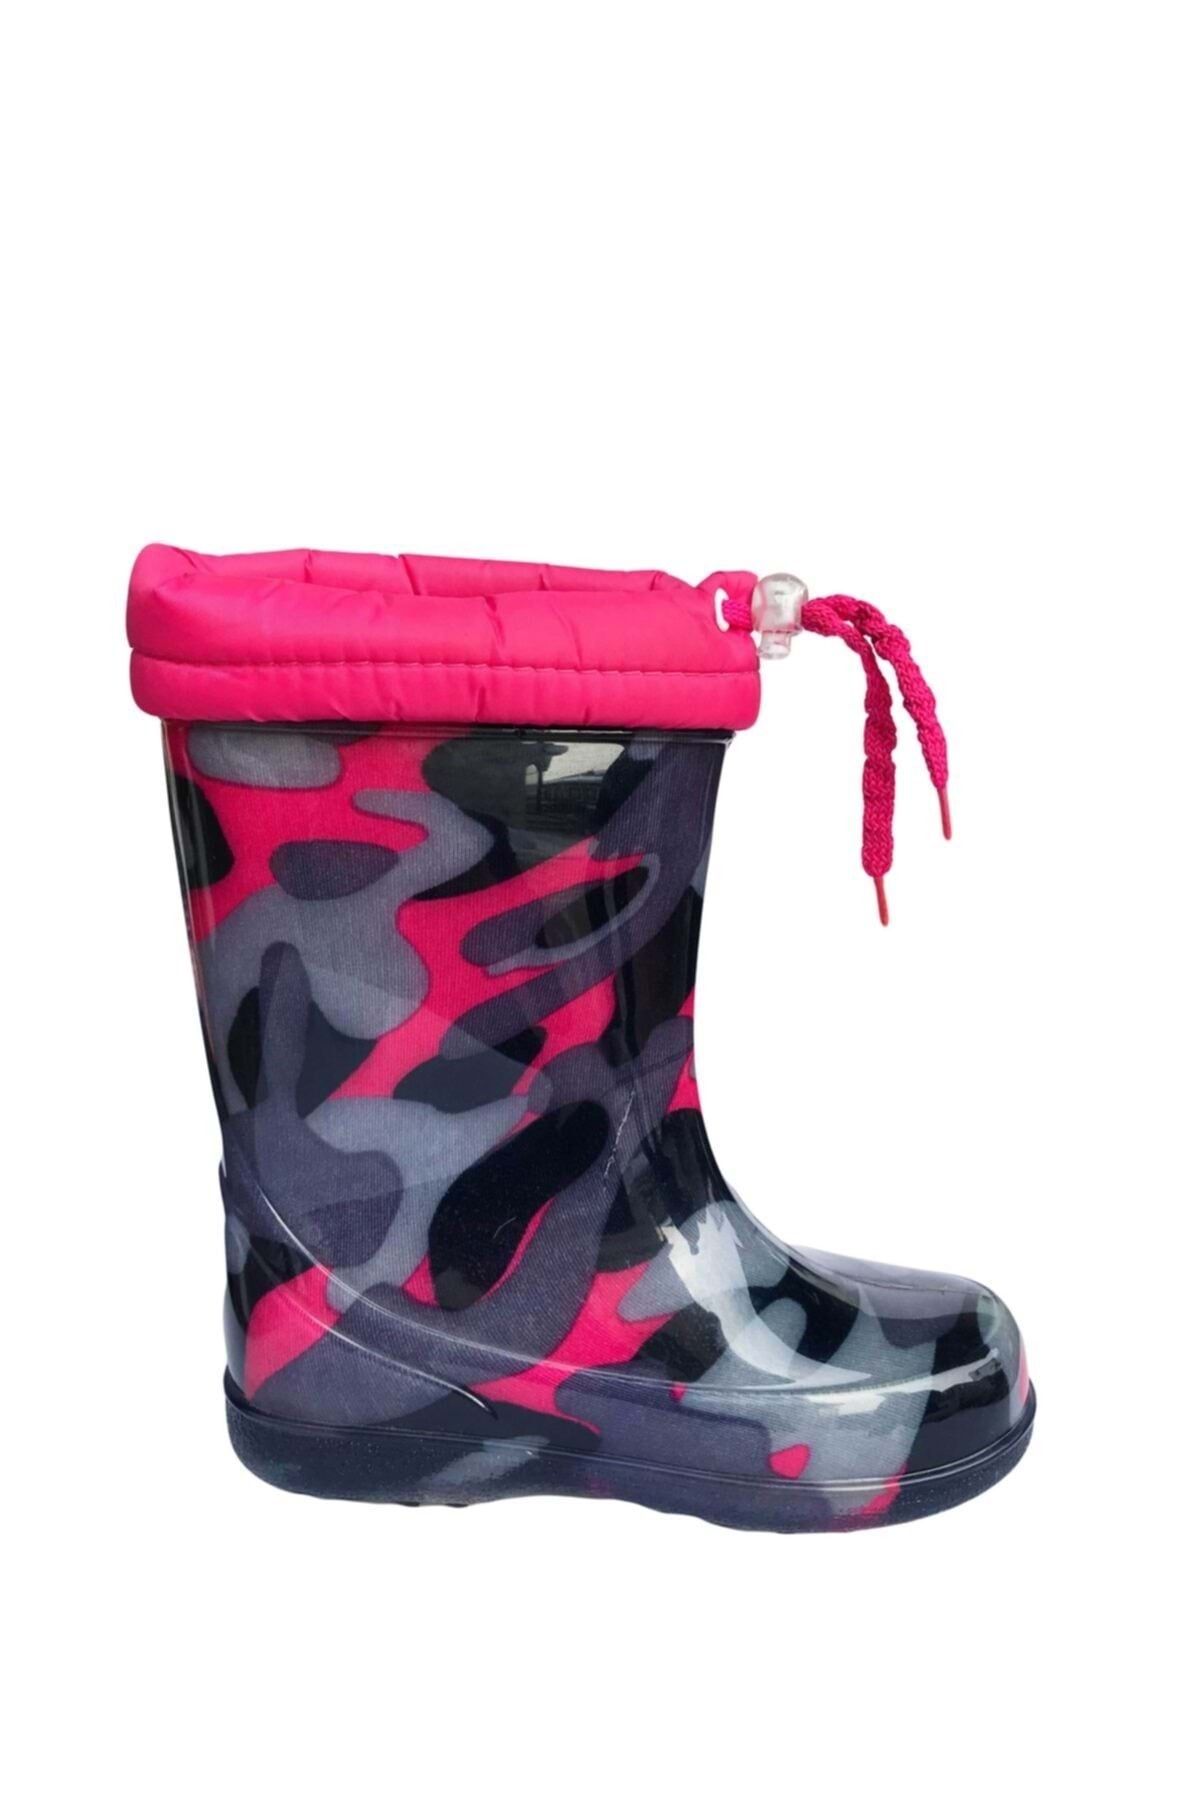 moda ayakkabım Moda Ayakkabı 501 Kız Çocuk Yağmurluk Çizme